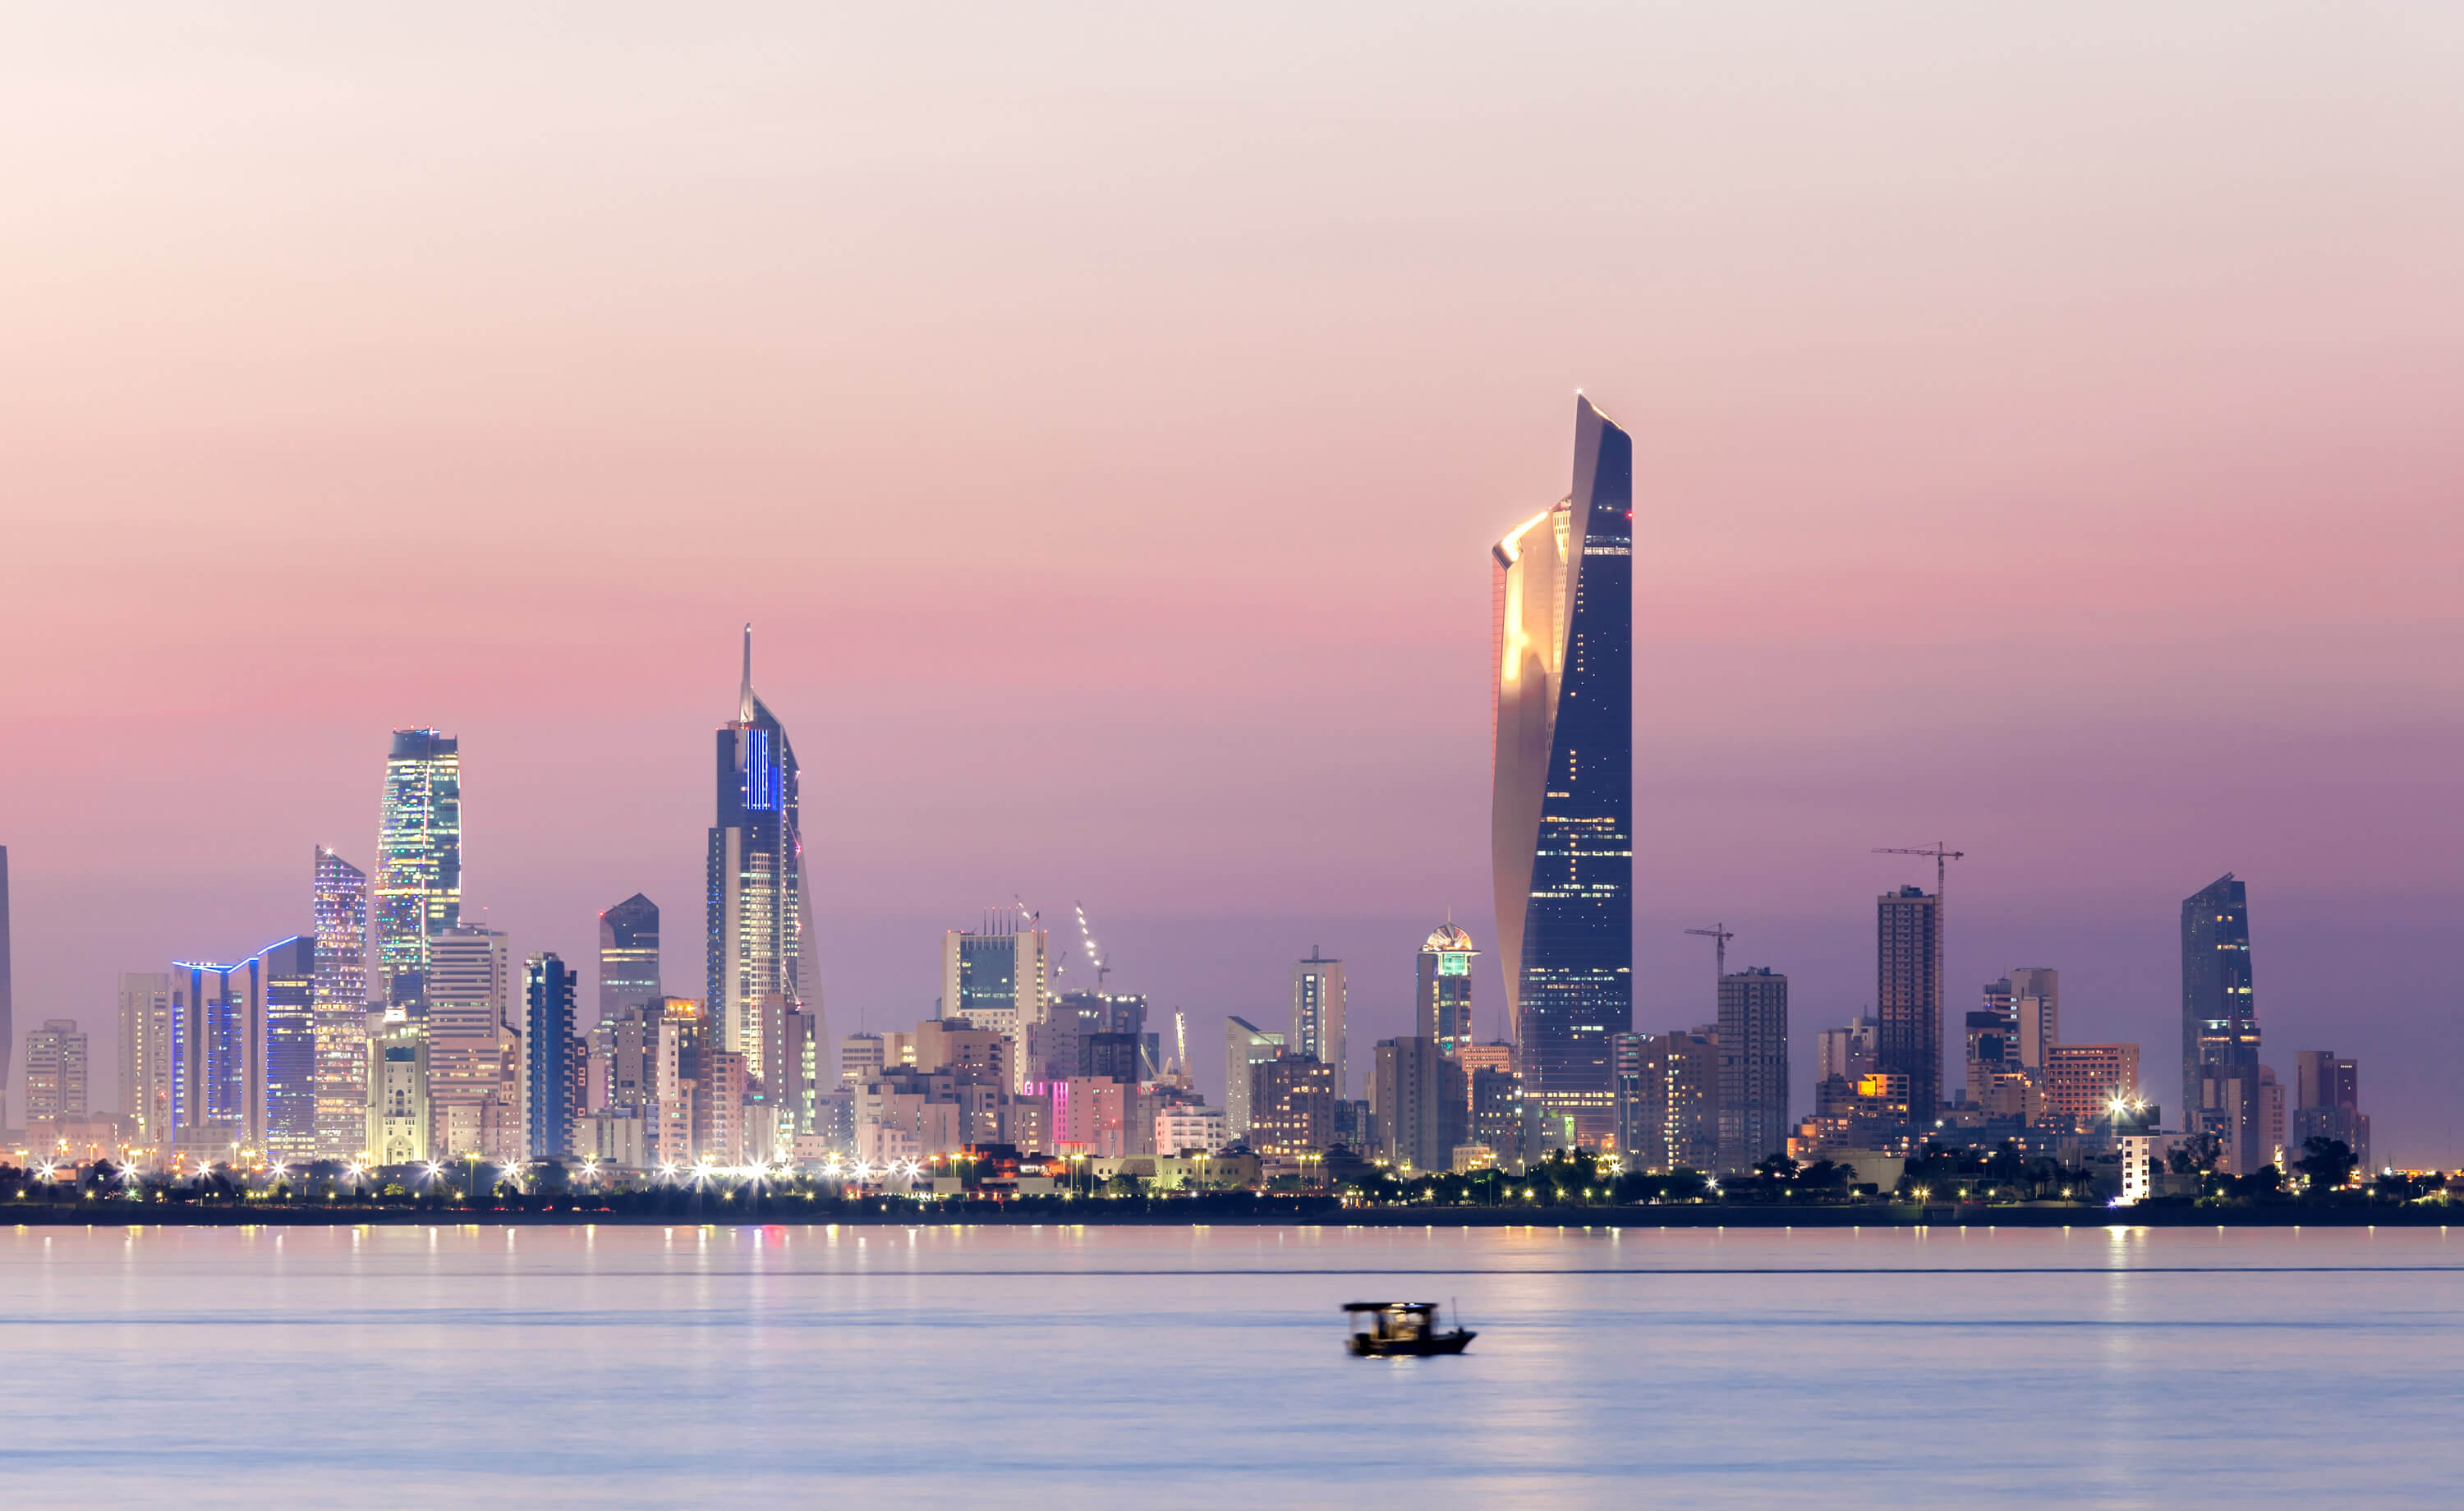 Skyline of Kuwait city